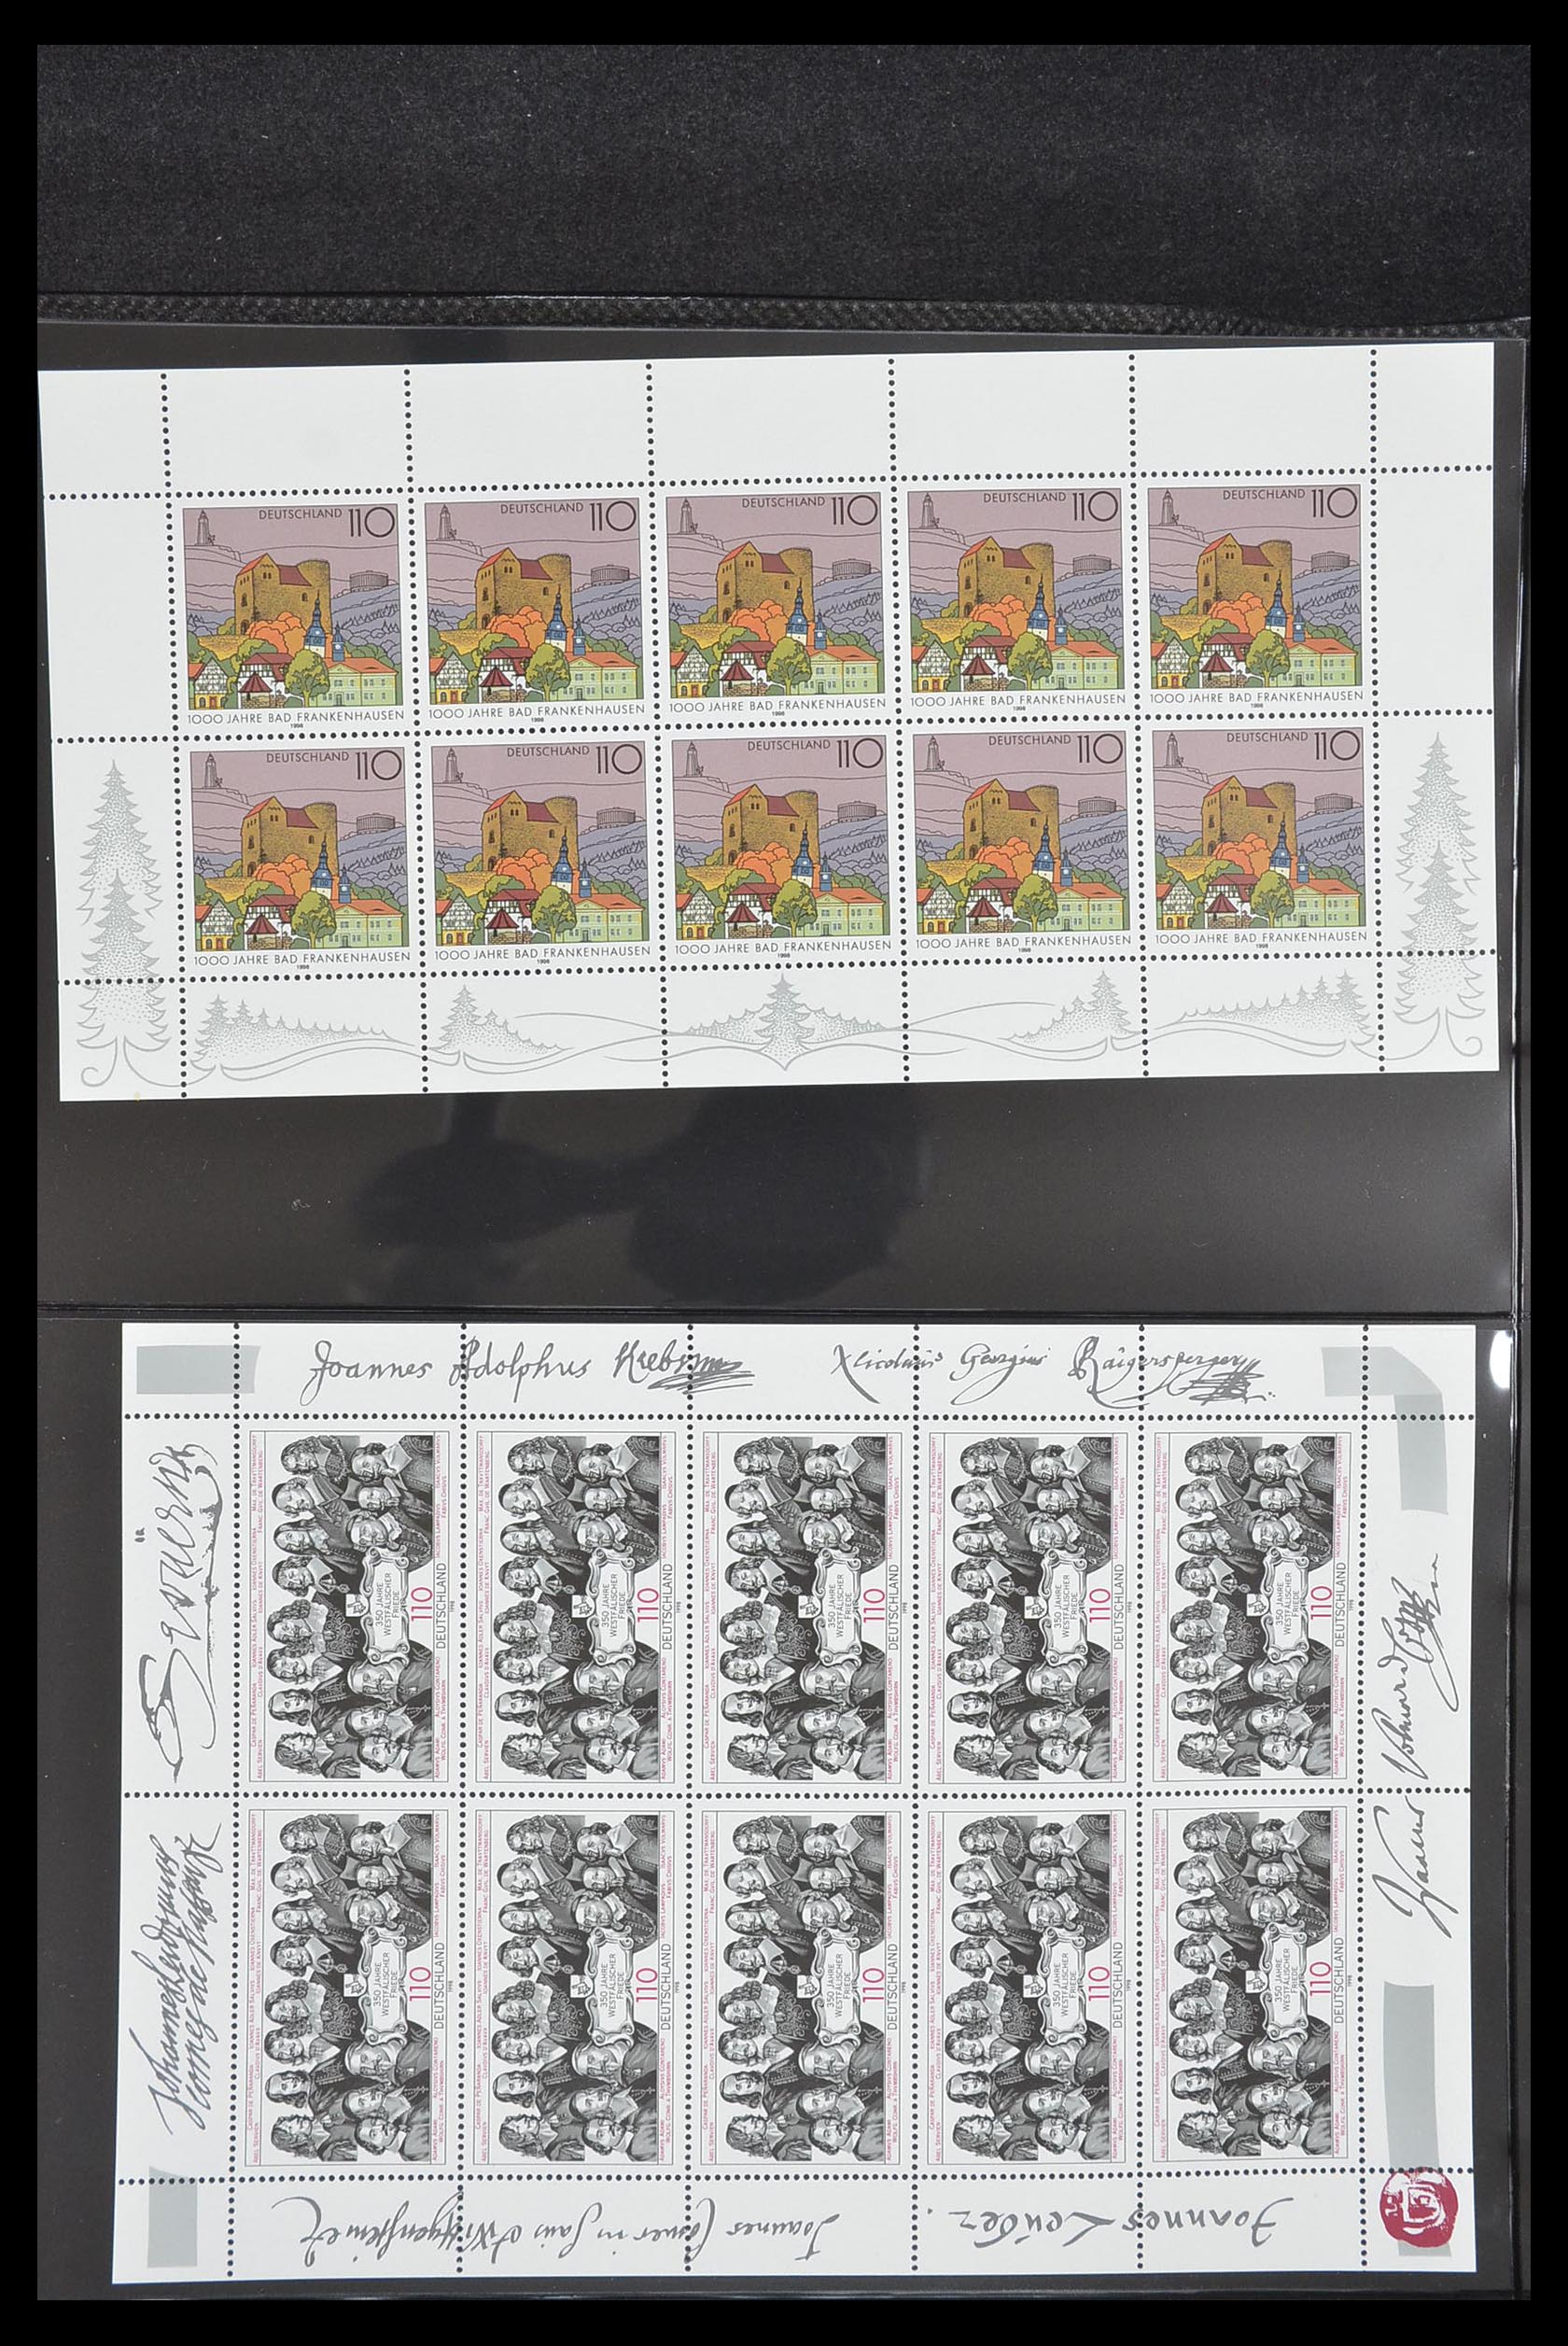 33936 095 - Stamp collection 33936 Bundespost kleinbogen 1994-2000.